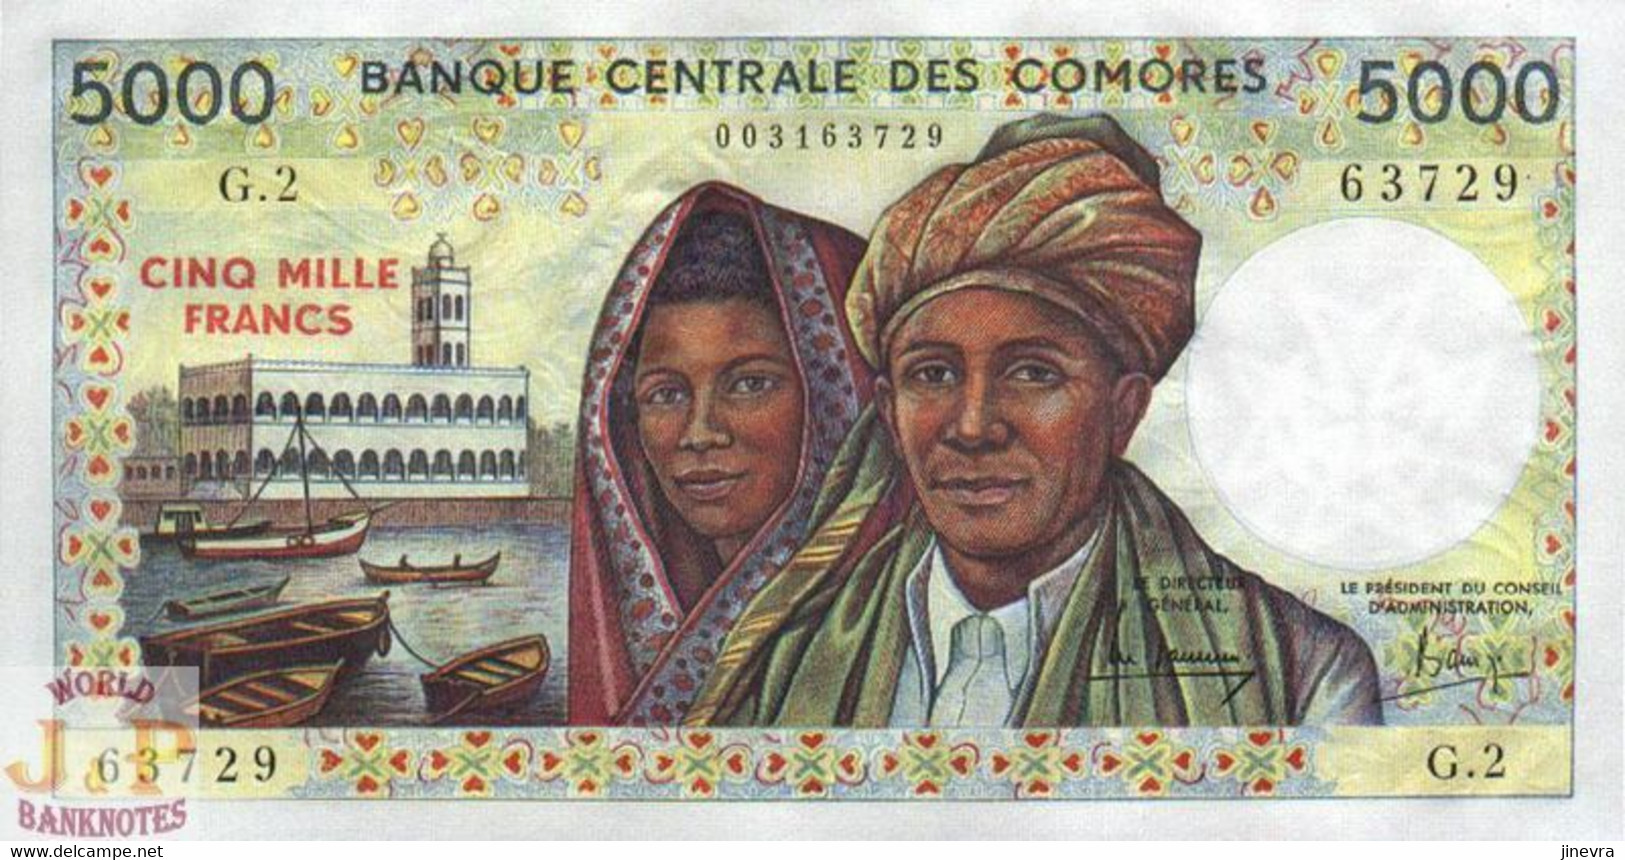 COMORES 5000 FRANCS 2000 PICK 12a UNC - Comoren